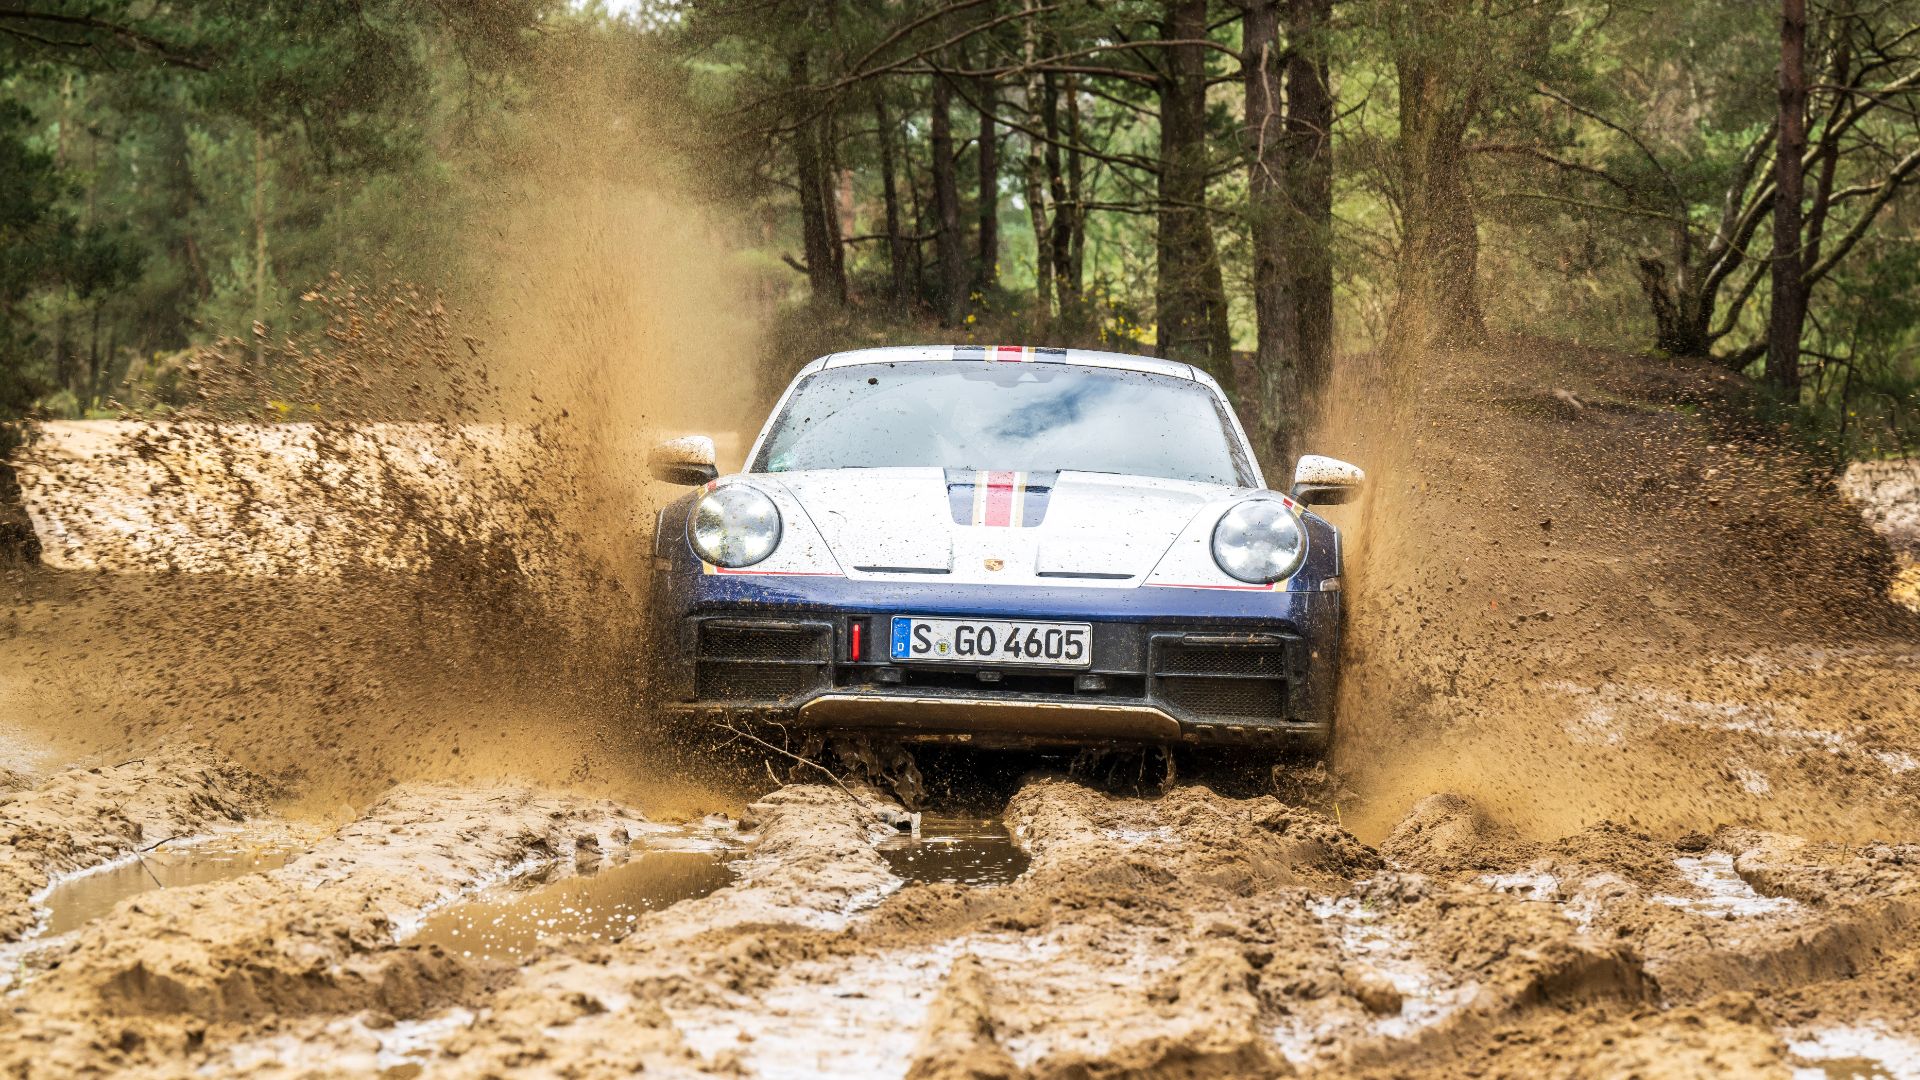 Porsche 911 Dakar review: the world's greatest sports car goes rogue